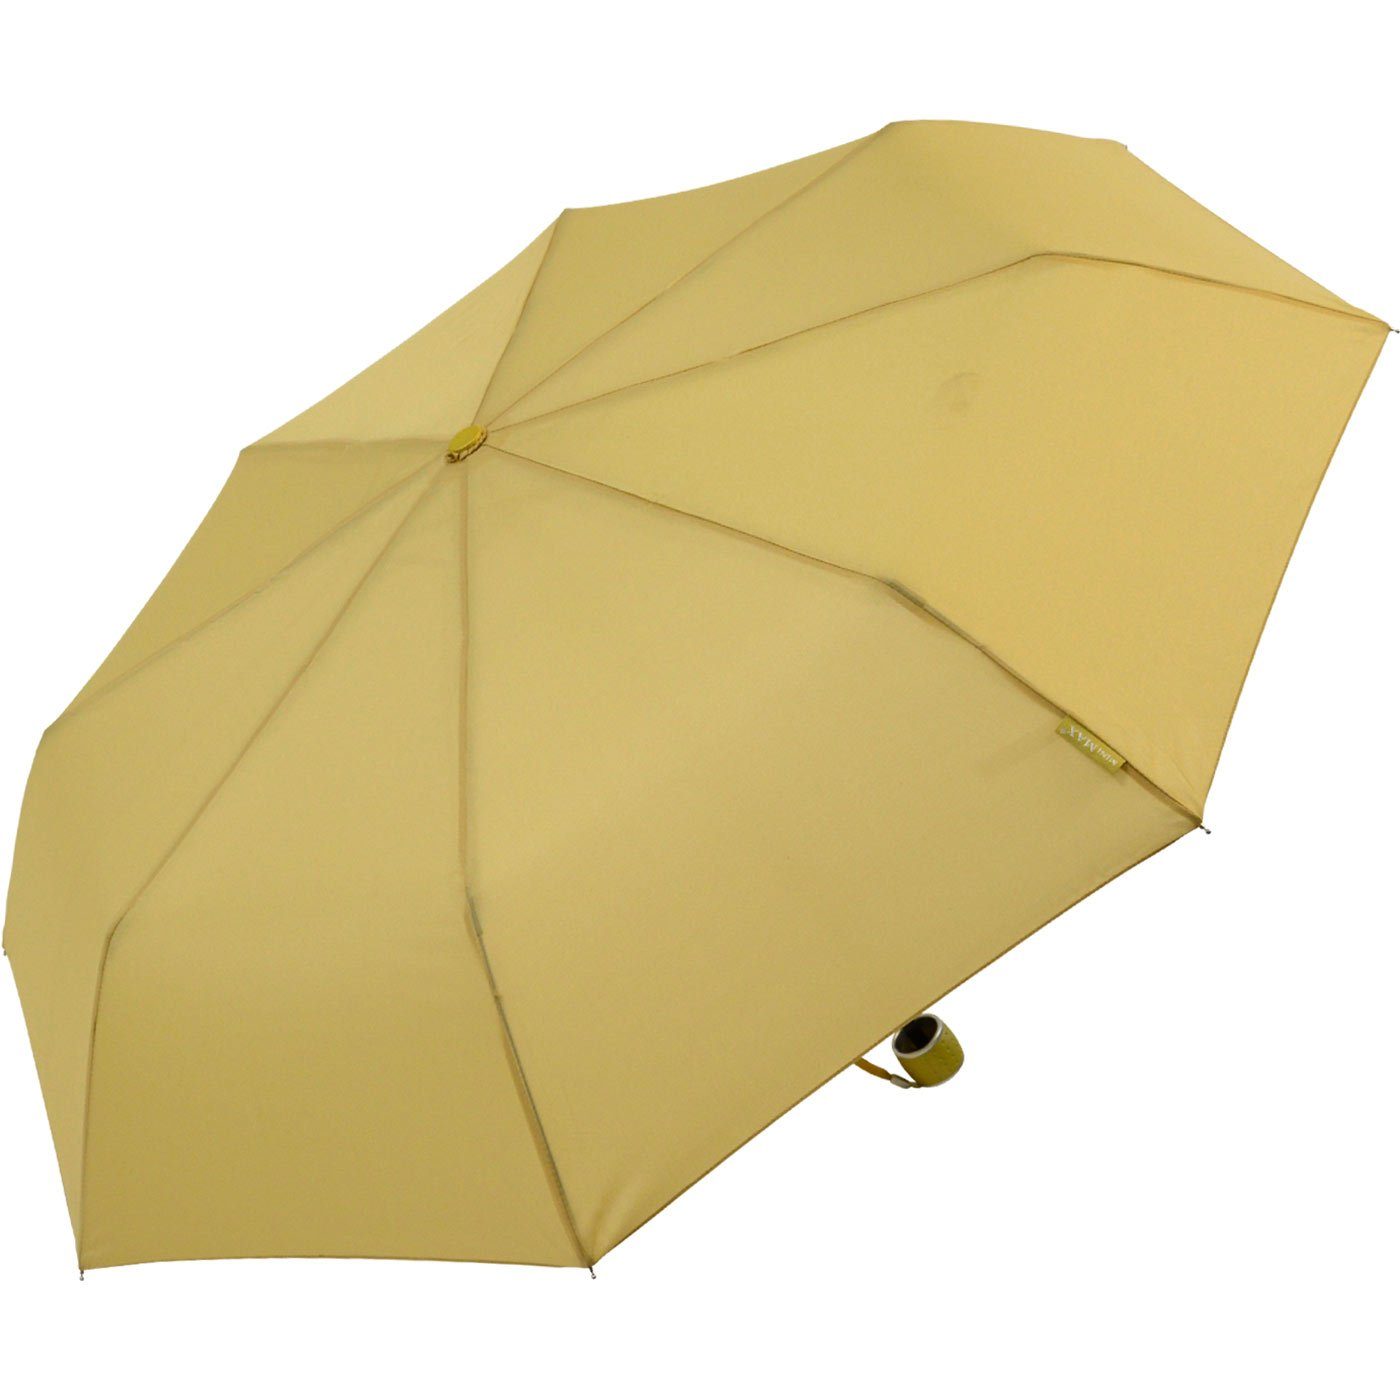 Schirm in leichter beige Tasche Impliva kleiner passt miniMAX® jjede Taschenregenschirm Handöffner,